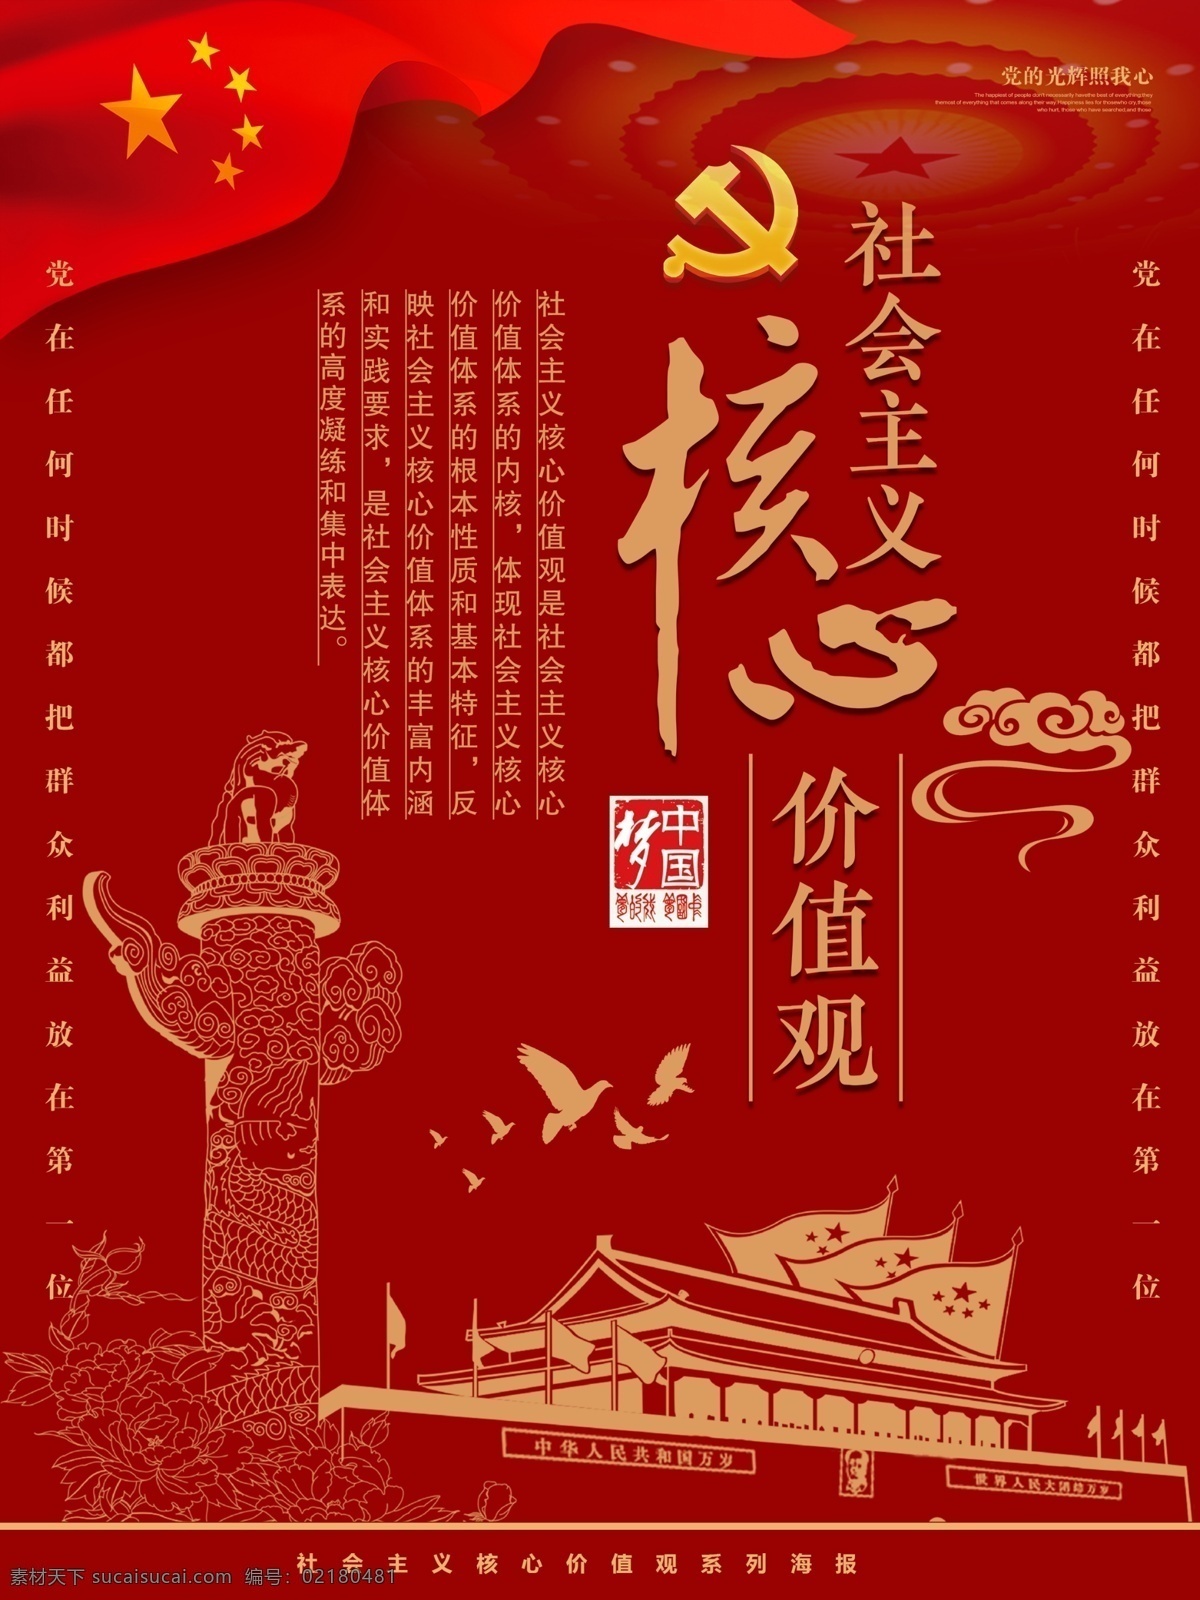 红 金 社会主义 核心 价值观 系列 海报 党建 核心价值观 和谐 富强 红金 天安门城